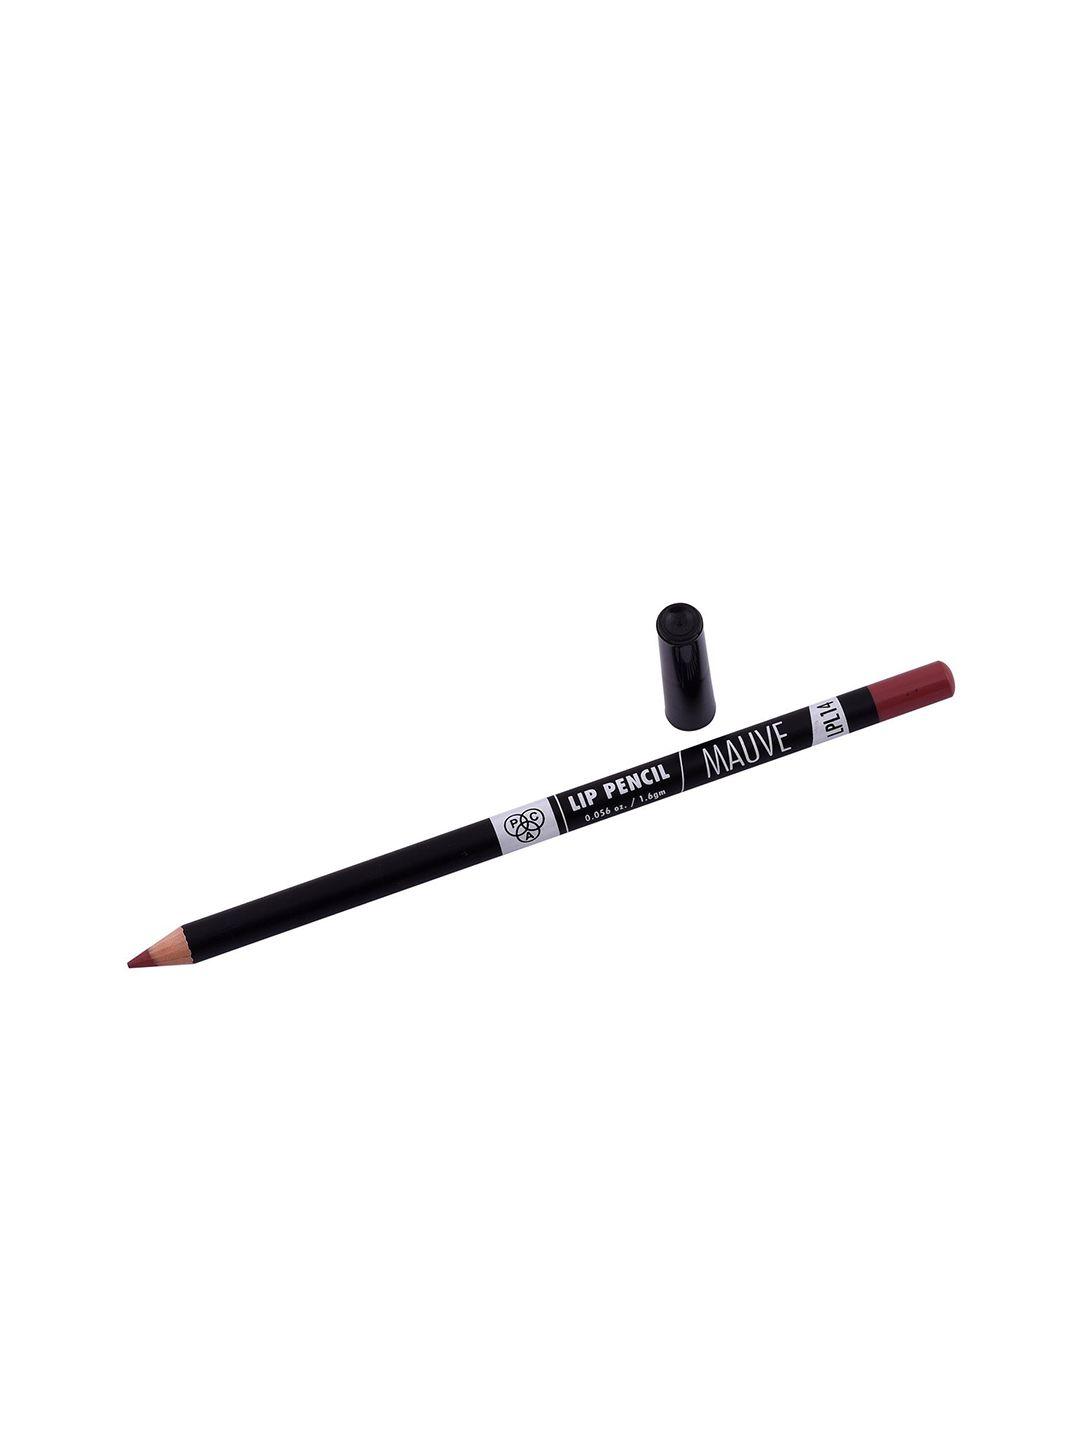 pac 14 mauve lip pencil 1.6 g